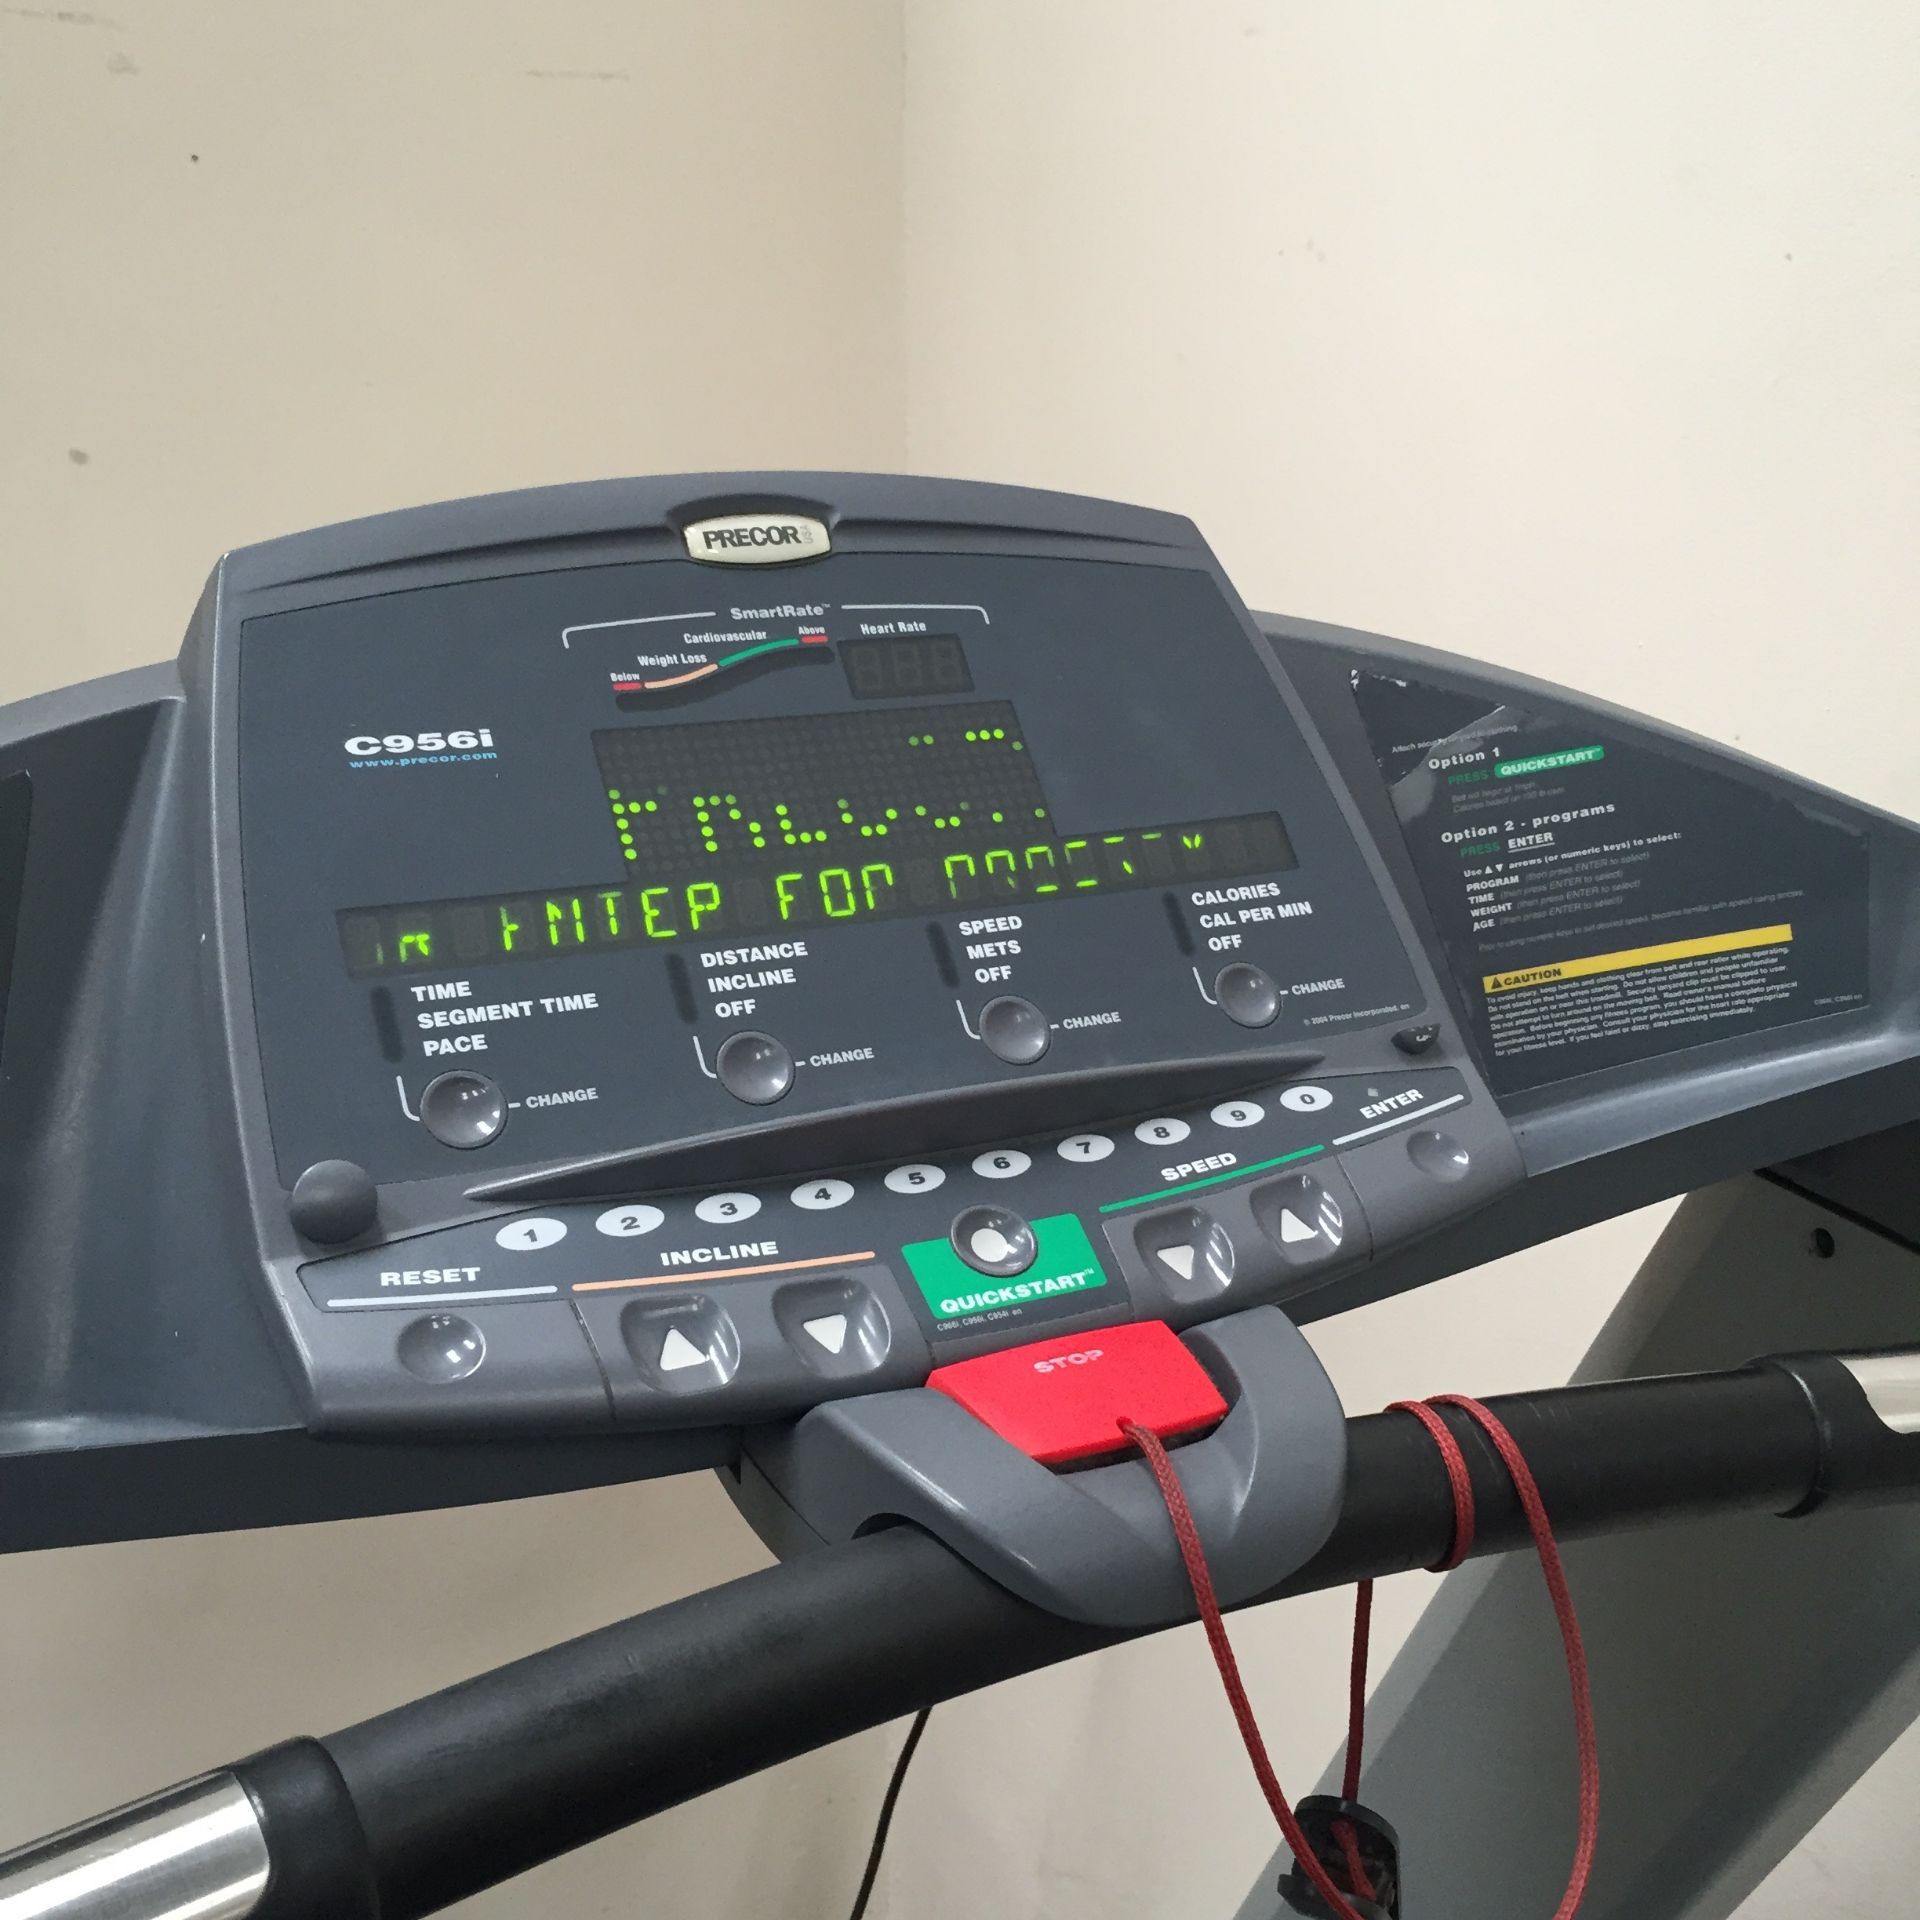 Precor C966 Treadmill - Image 3 of 5